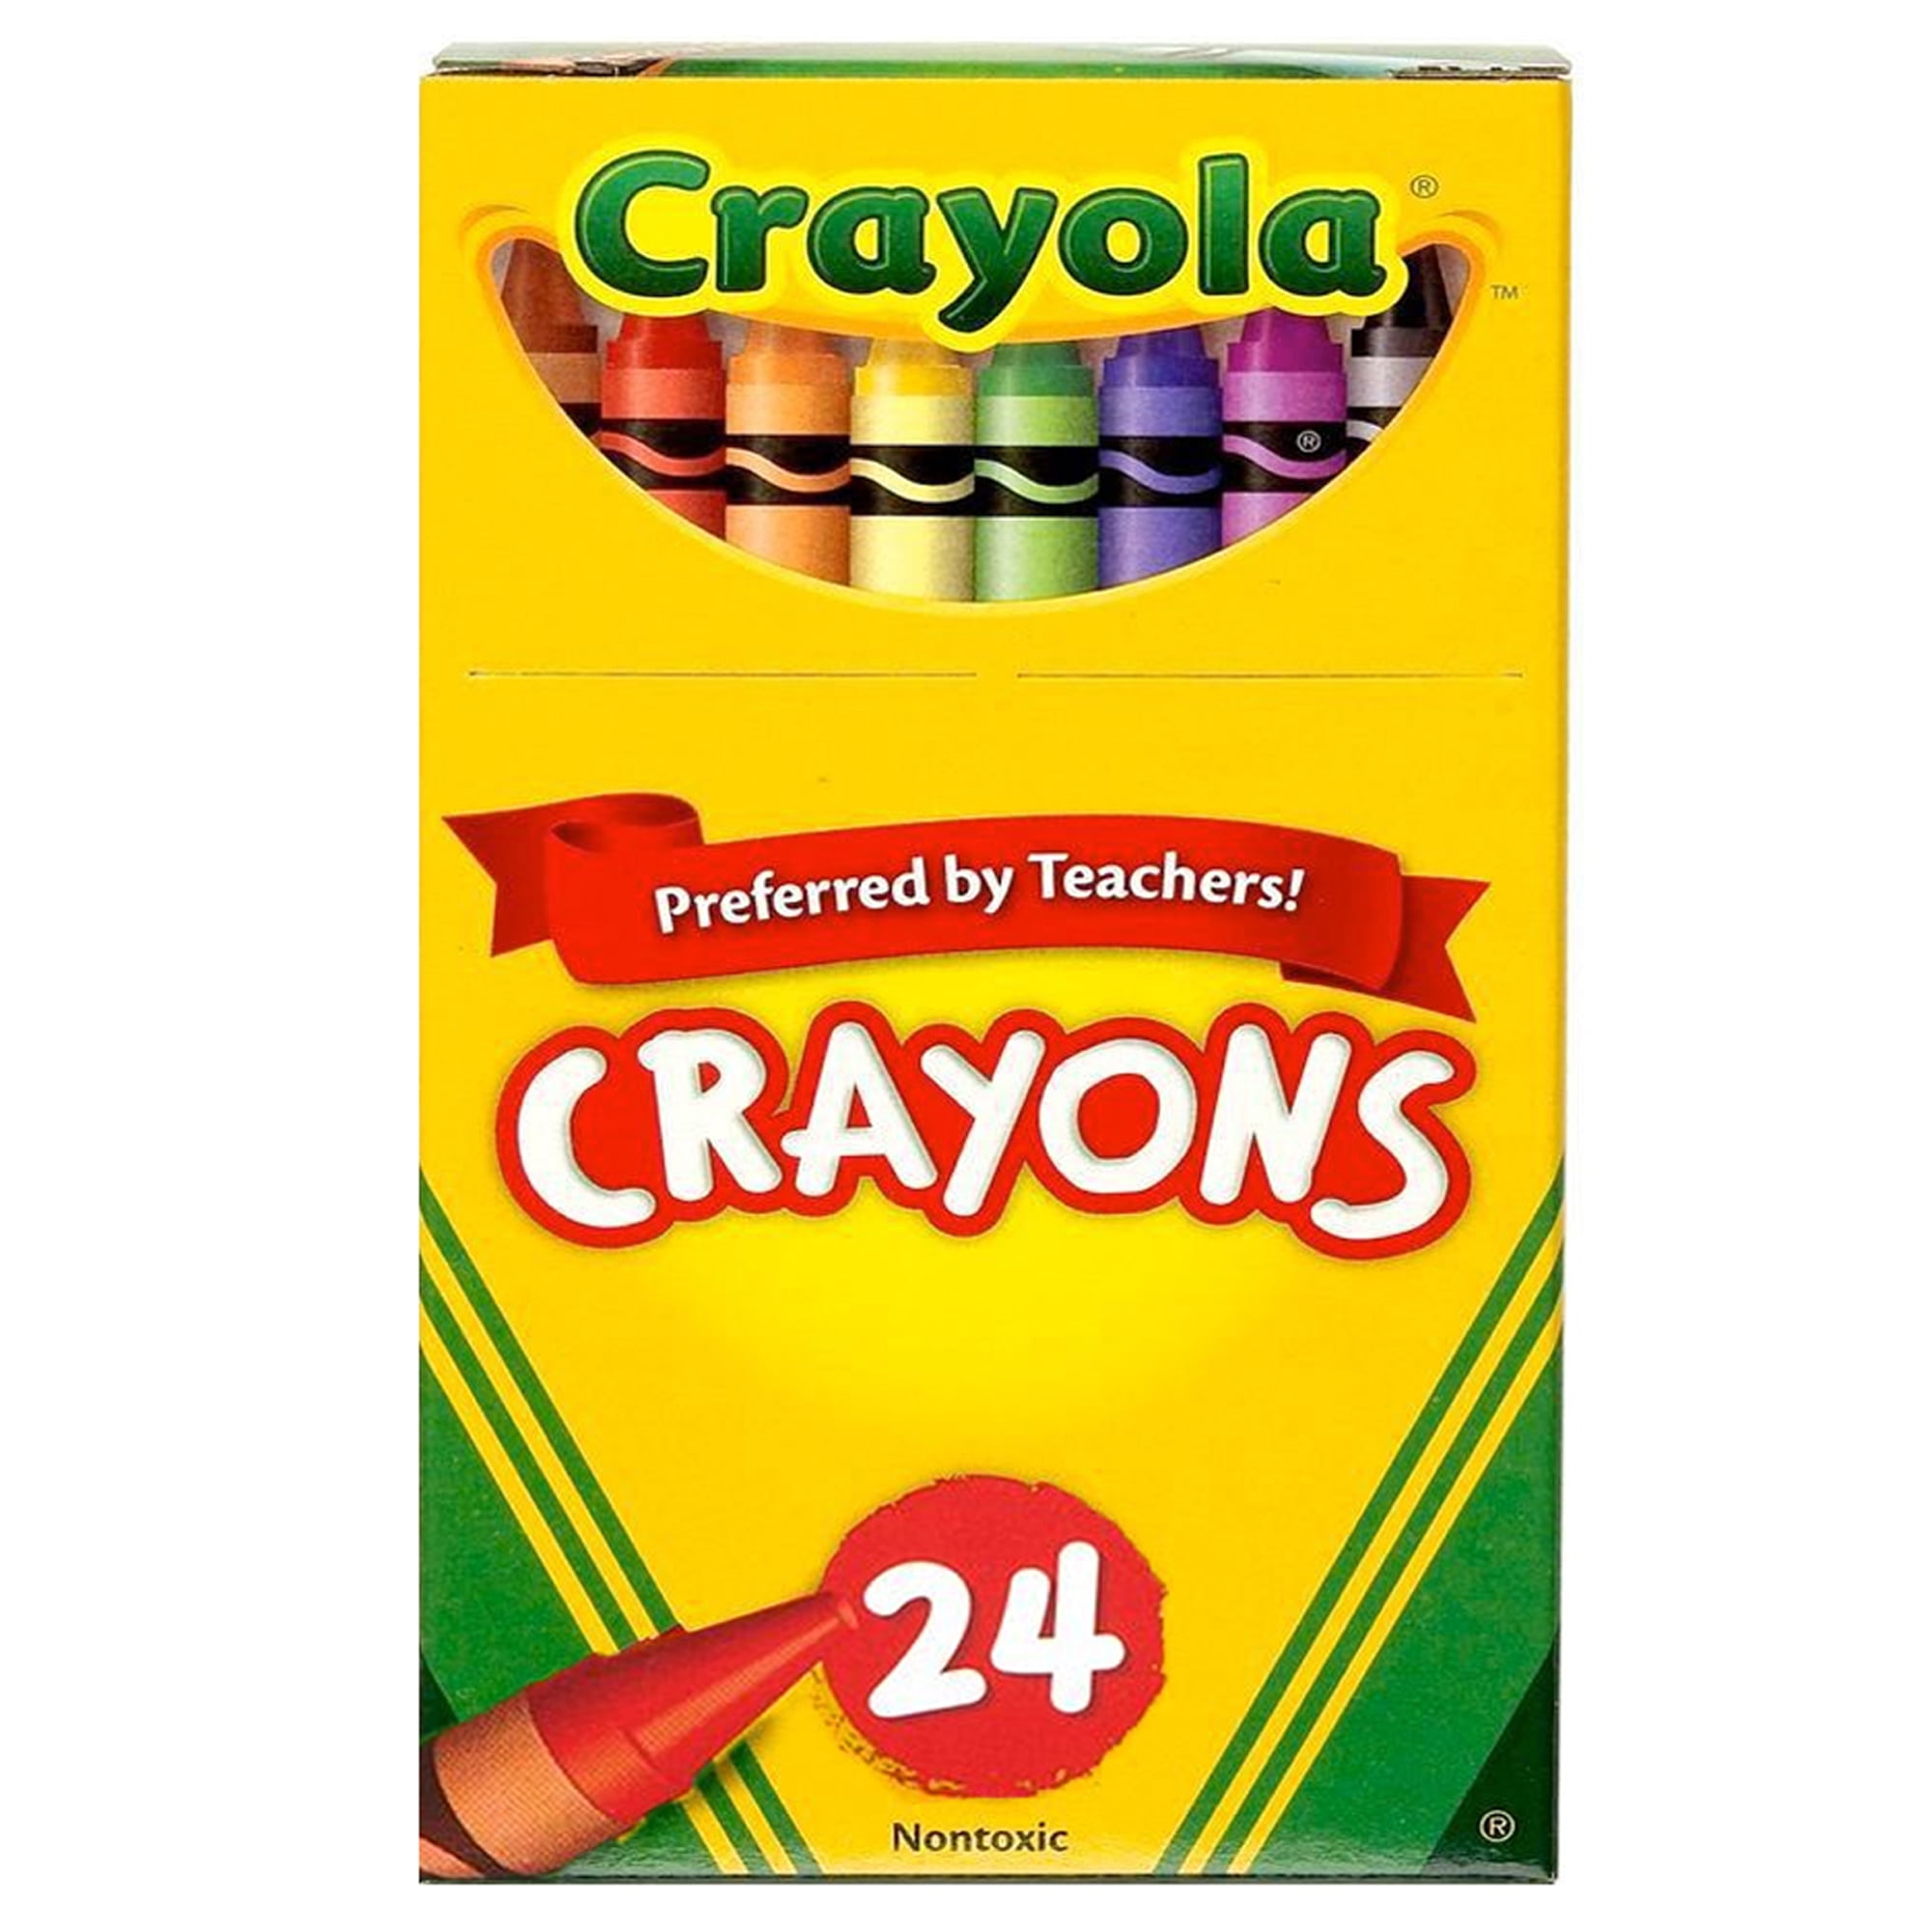 Crayon Boxes